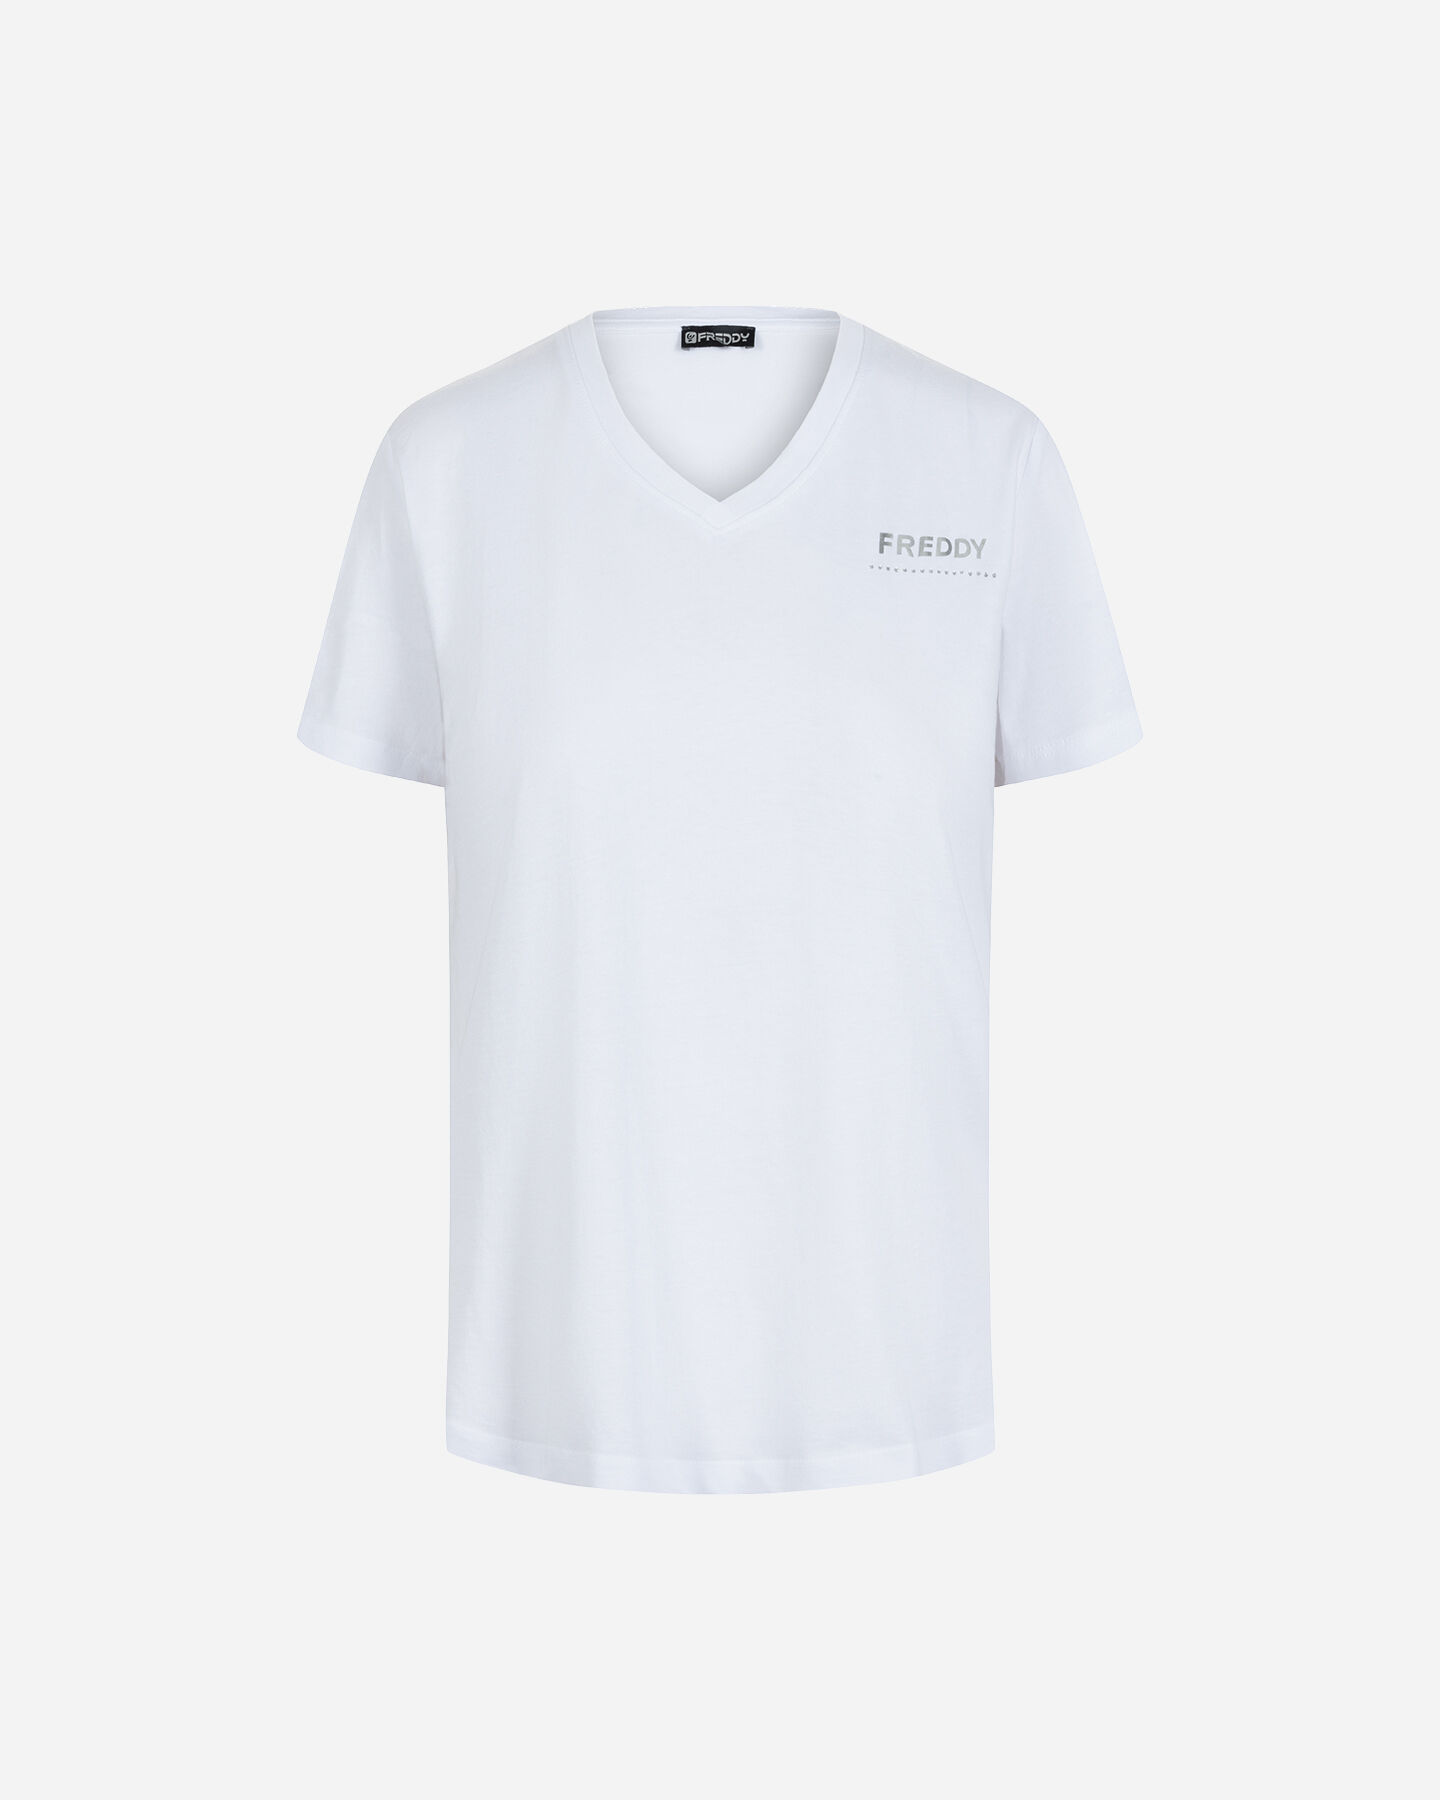  T-Shirt FREDDY SMALL LOGO W S5679037|W-|XS scatto 0